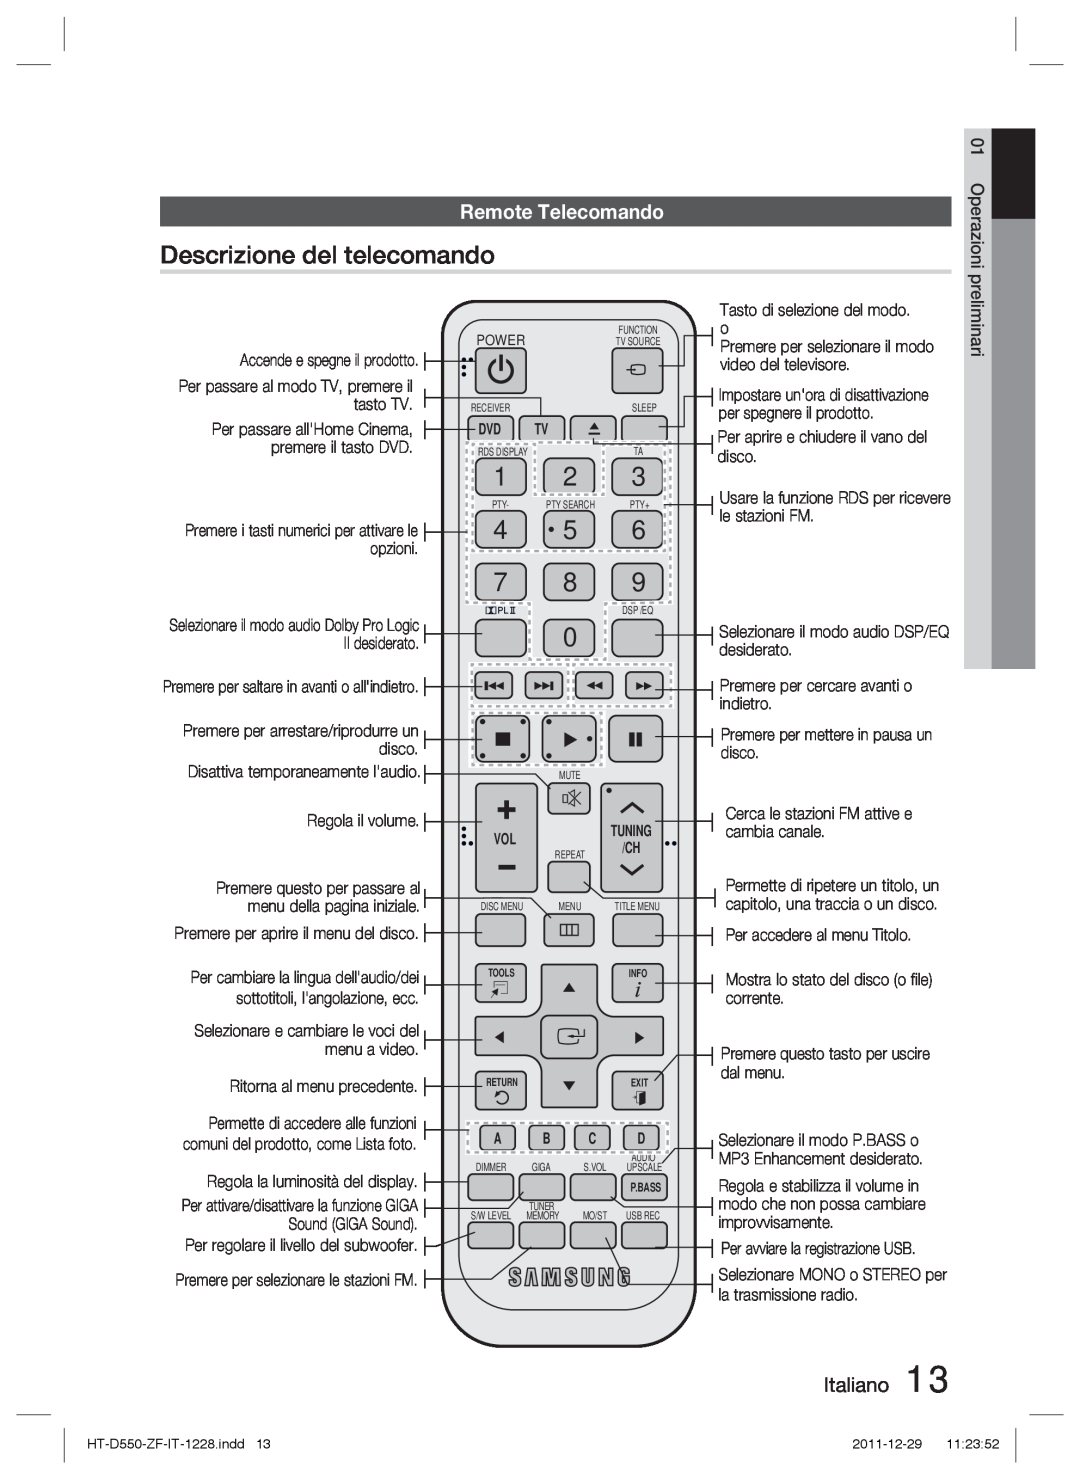 Samsung HT-D550/XN Descrizione del telecomando, Remote Telecomando, Italiano, Operazioni, Accende e spegne il prodotto 